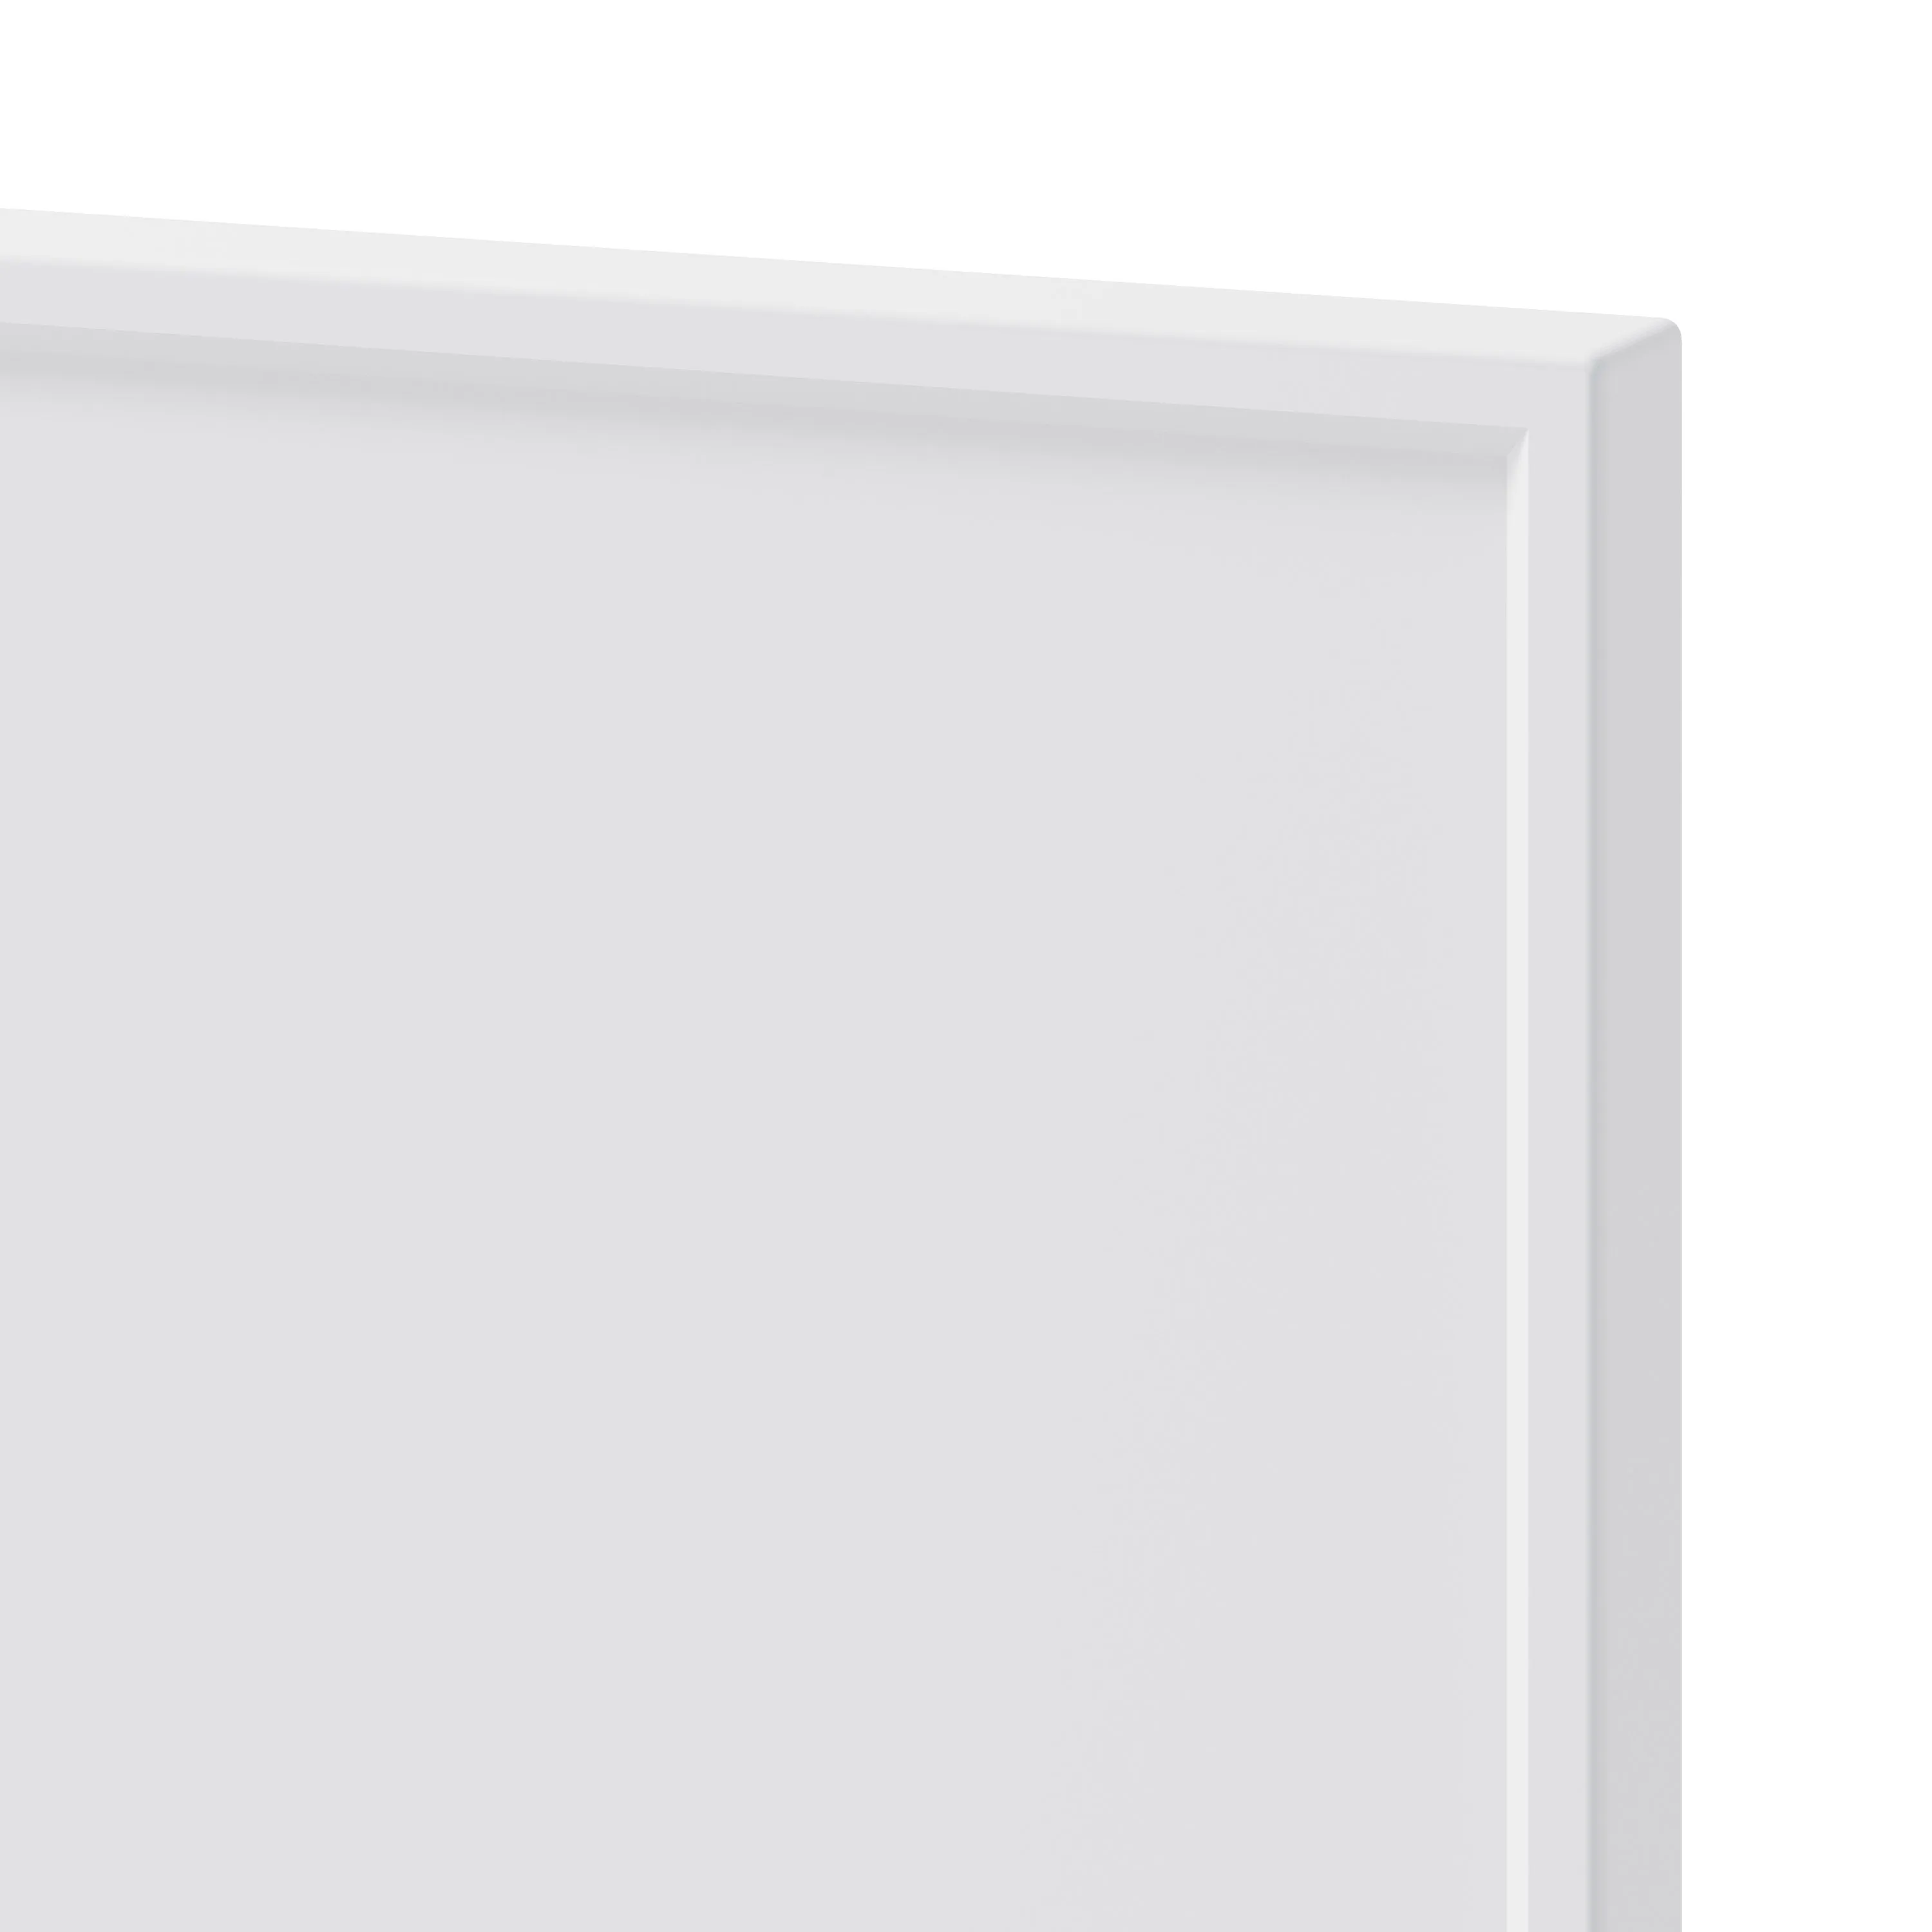 GoodHome Pasilla Matt white thin frame slab Drawerline door & drawer front, (W)400mm